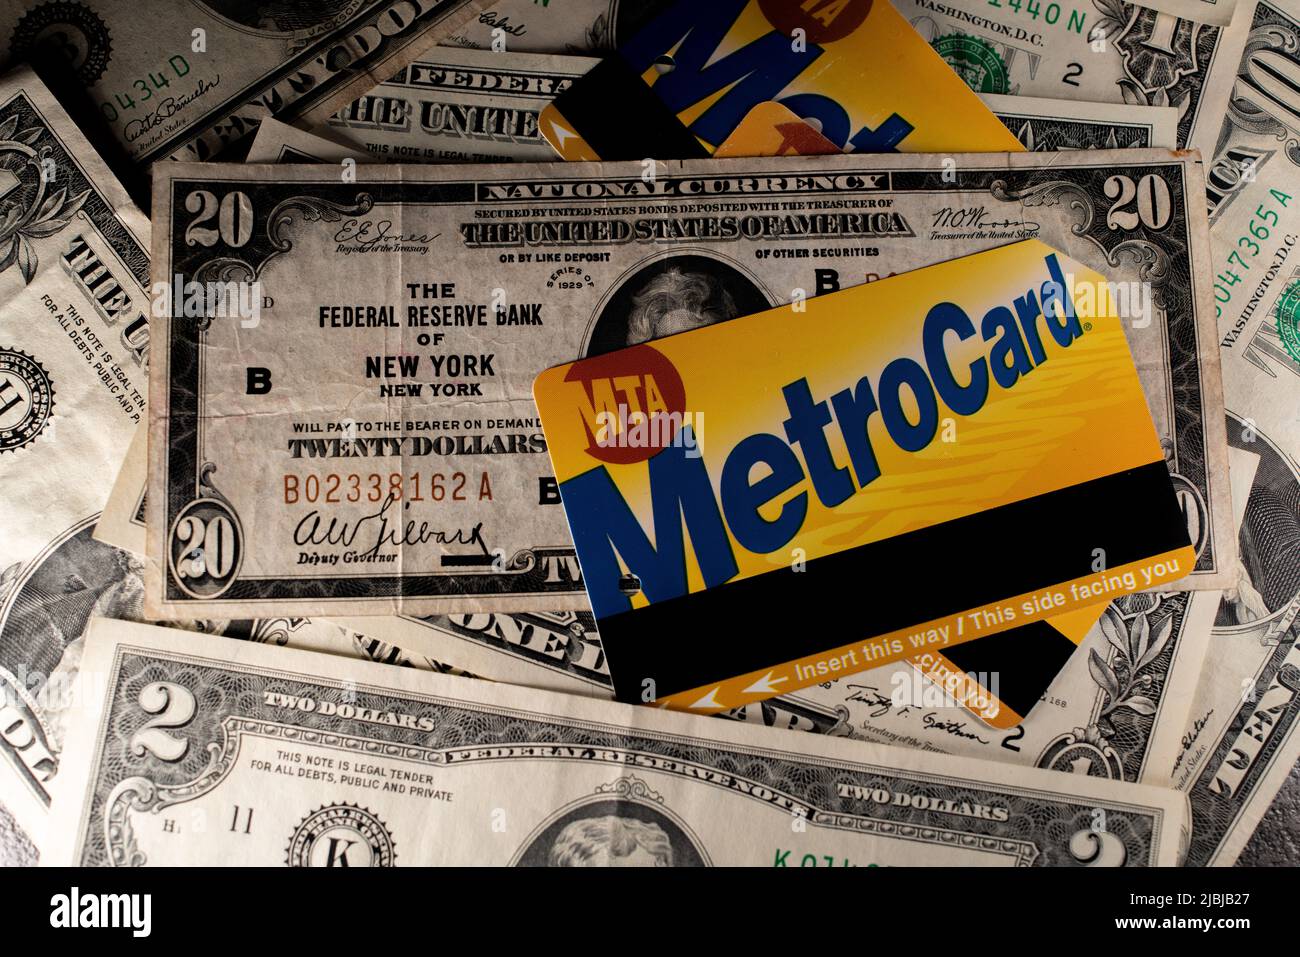 Manhattan, New York/Etats-Unis - 26 mars. 2021: Metro Card sur les billets en dollars. Prix du billet de métro à New York. Concept d'achat de billets MTA Banque D'Images